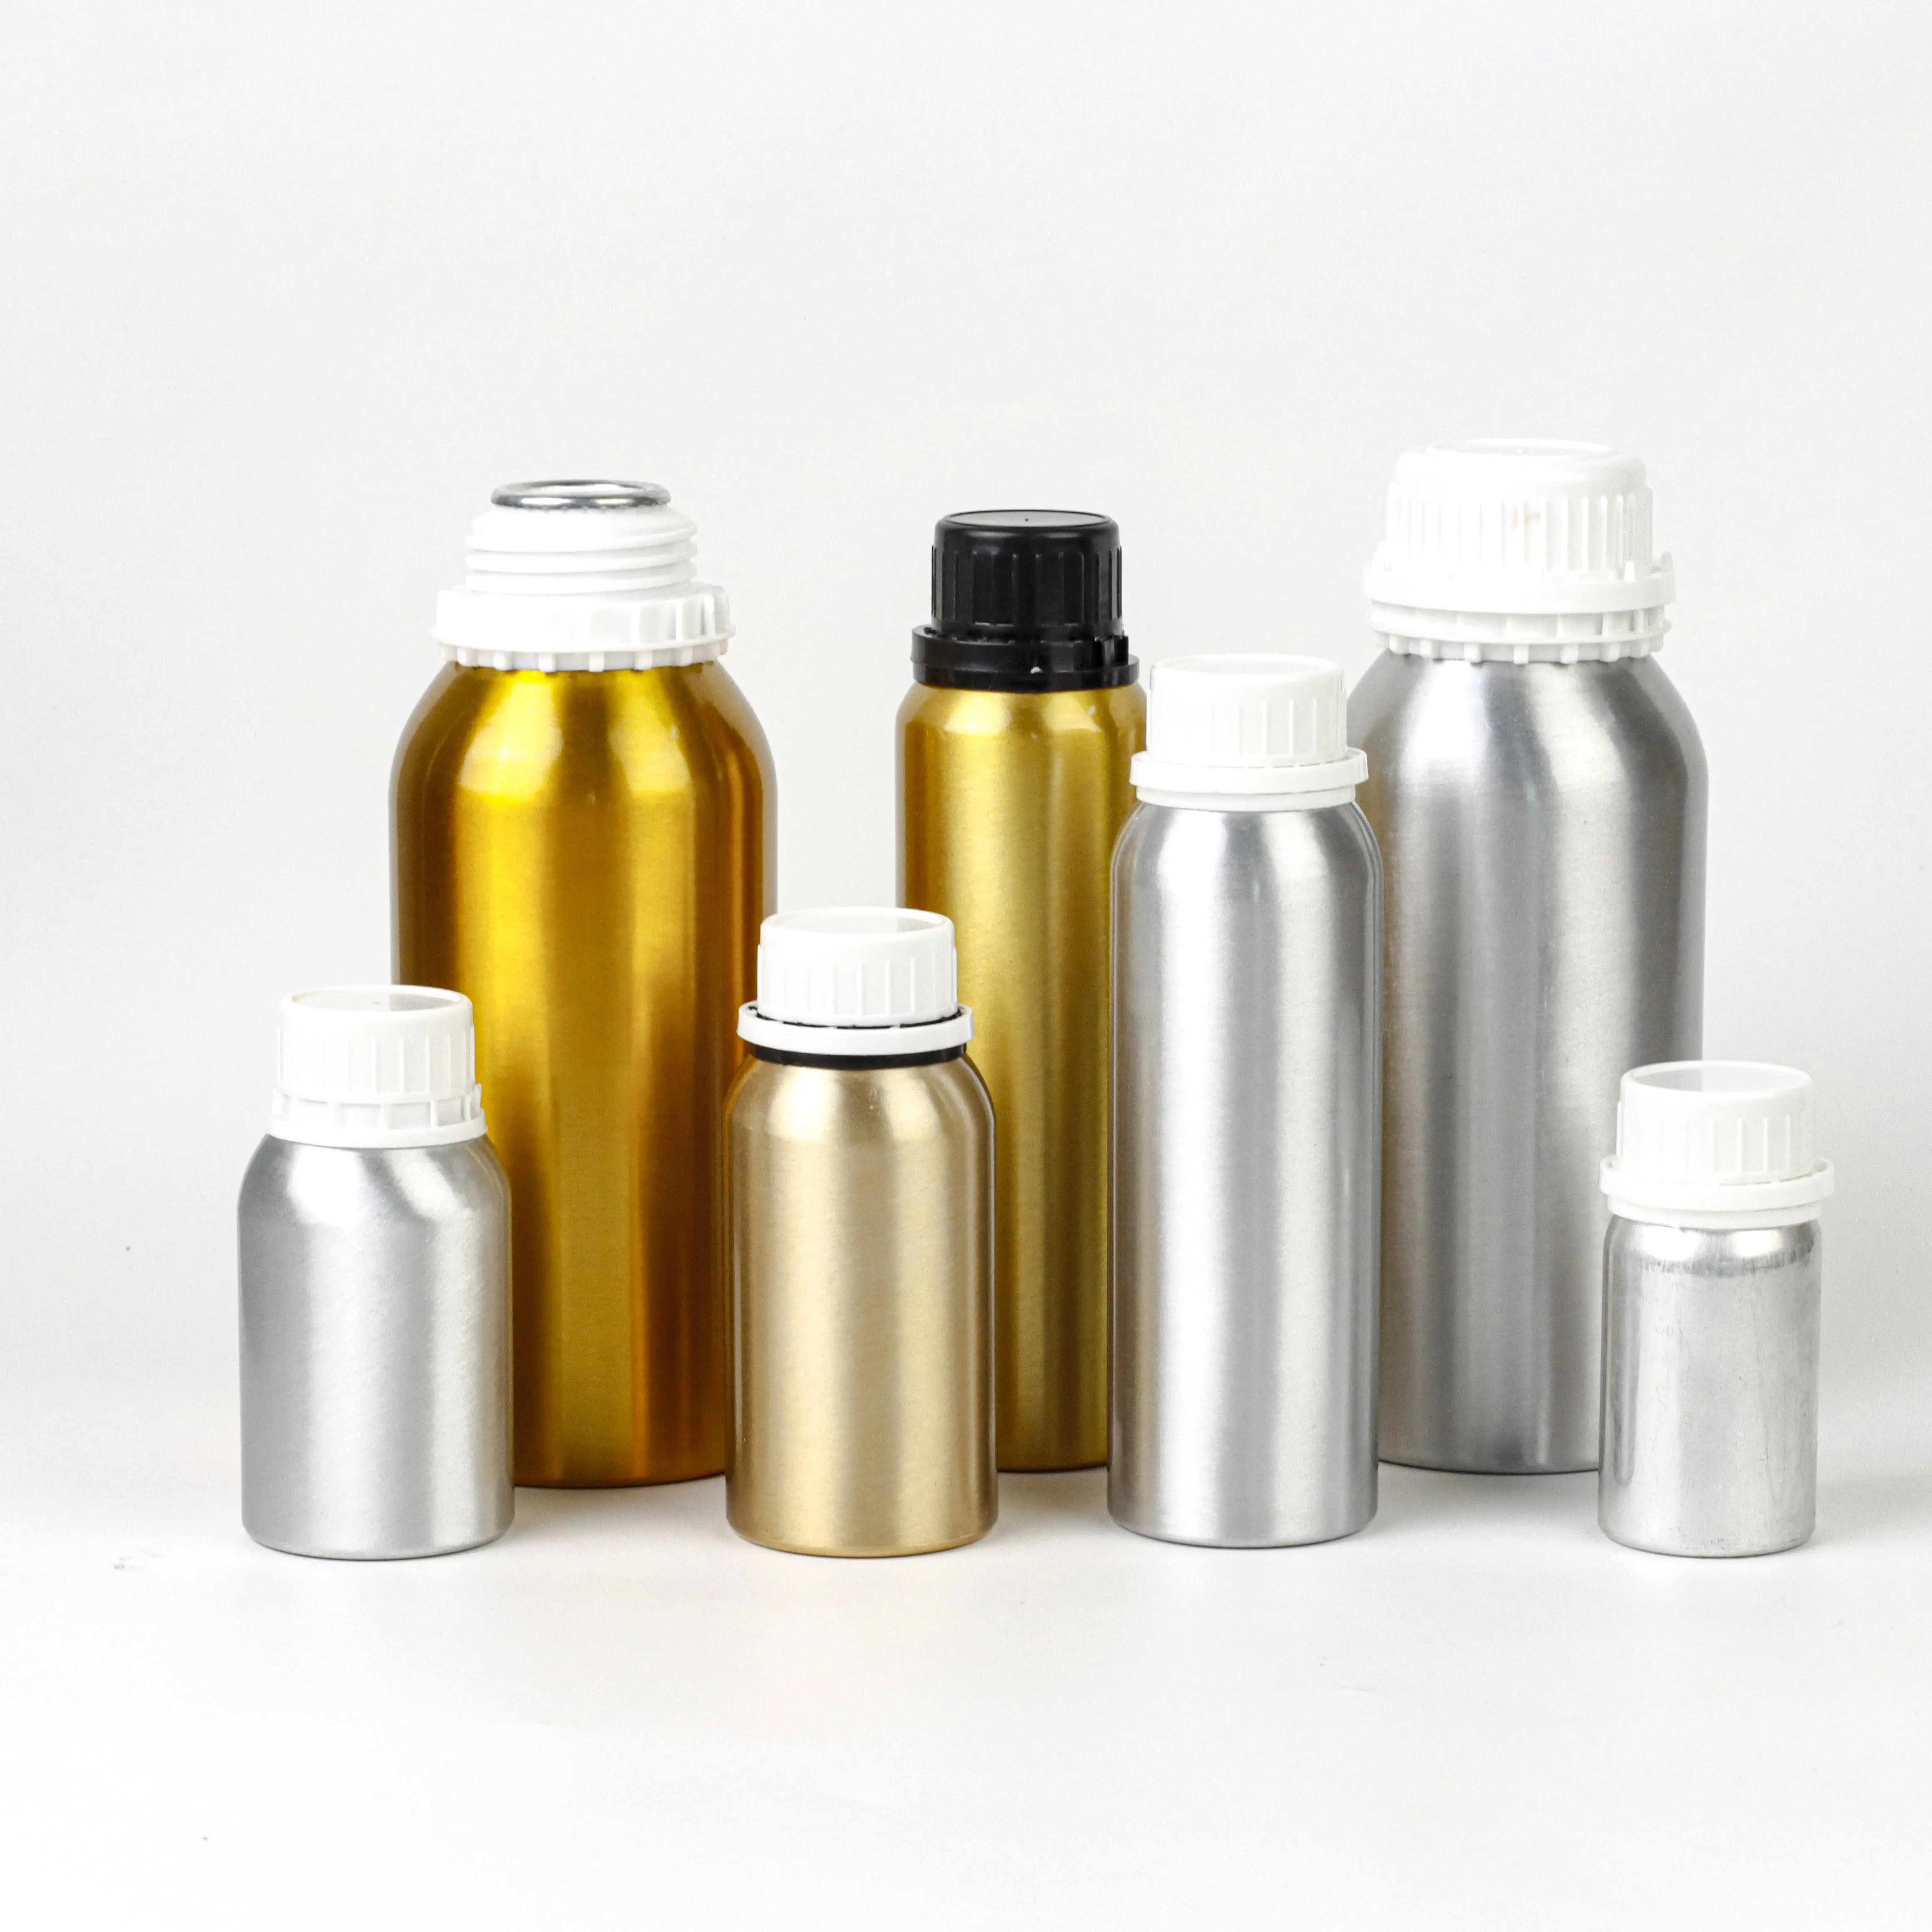 Vente en gros bouteille de parfum recyclable de luxe personnalisée en aluminium bouteille d'huile essentielle avec couvercle inviolable